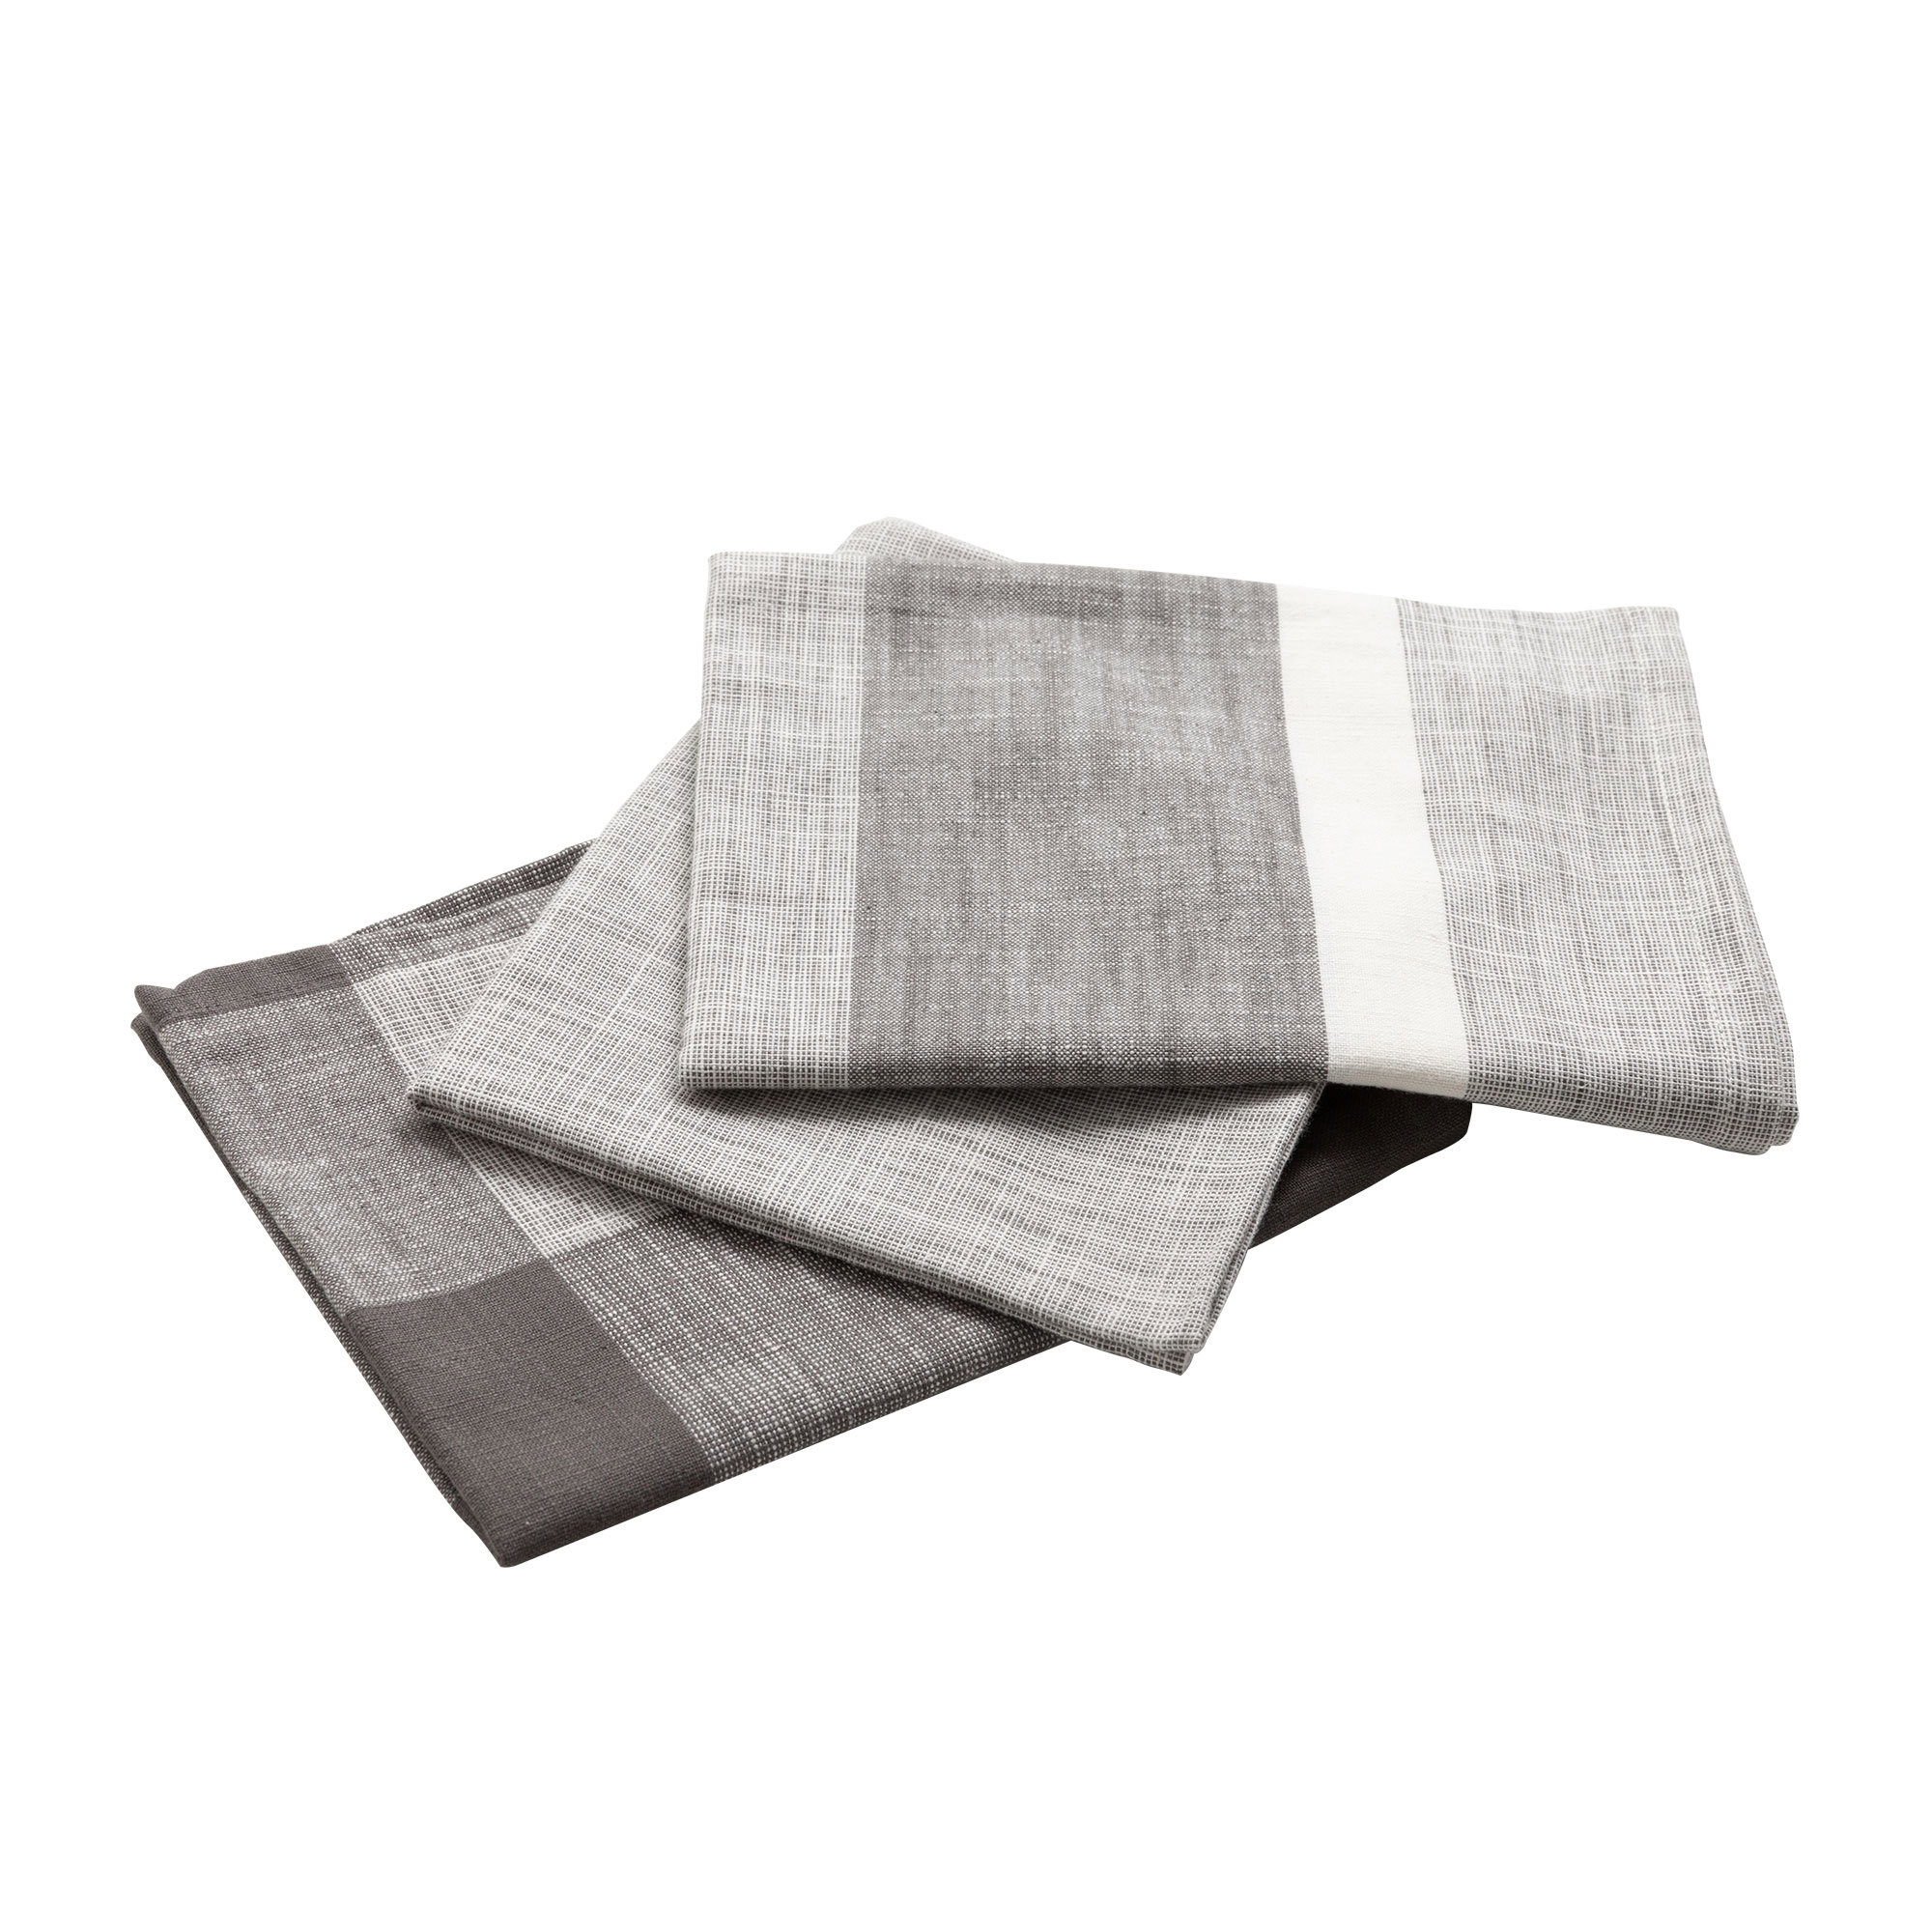 Salisbury & Co Hampton Tea Towel Set of 3 Charcoal Image 2